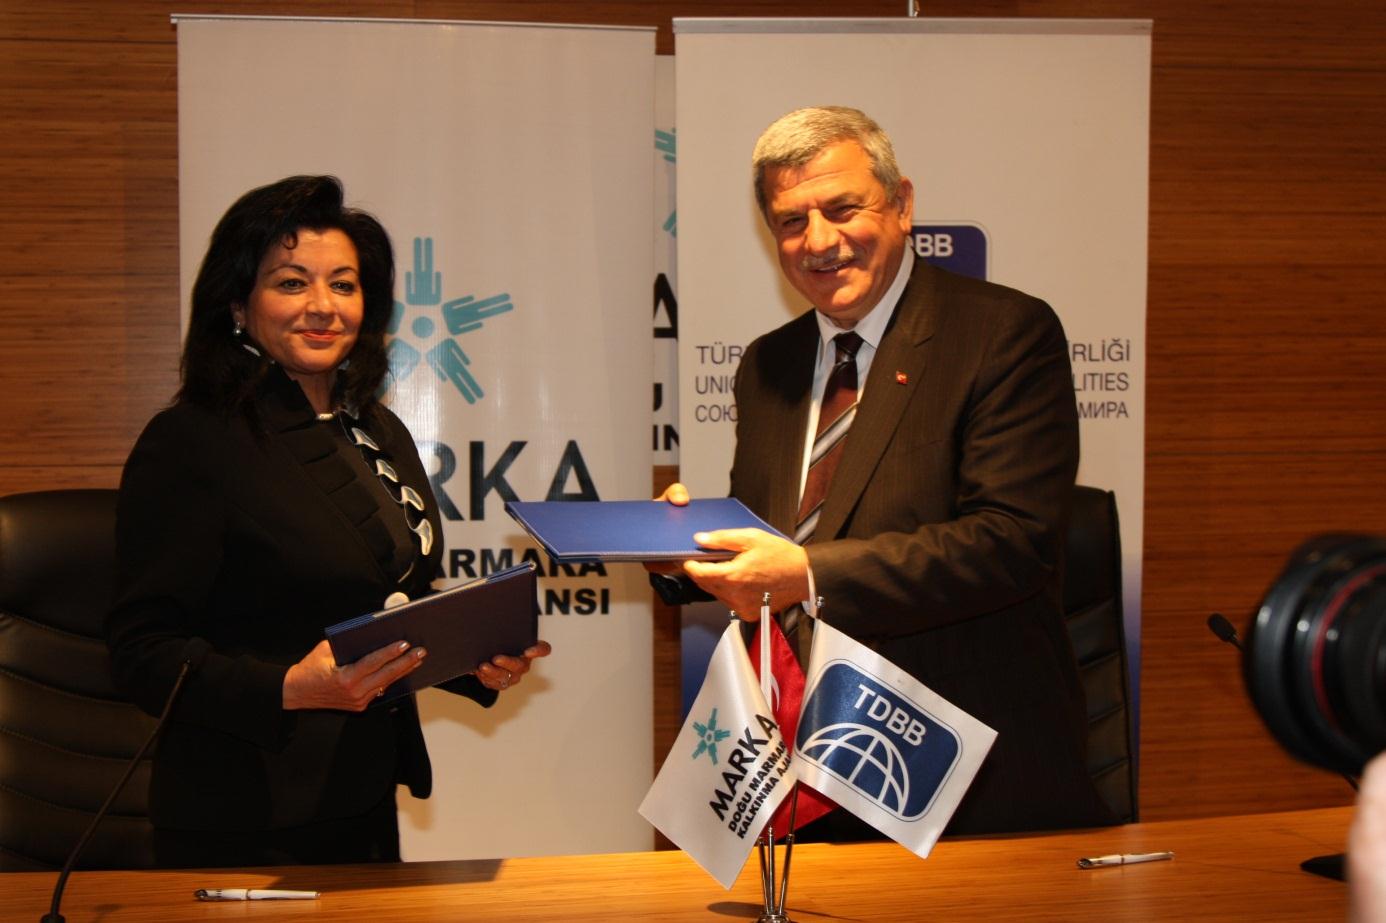 İşbirliği ağı çalışmaları kapsamında 25 Nisan 2012 tarihinde Uluslararası teşkilat statüsüne haiz olan Türk Dünyası Belediyeler Birliği (TDBB) ile Mutabakat Zaptı imzalanmıştır.